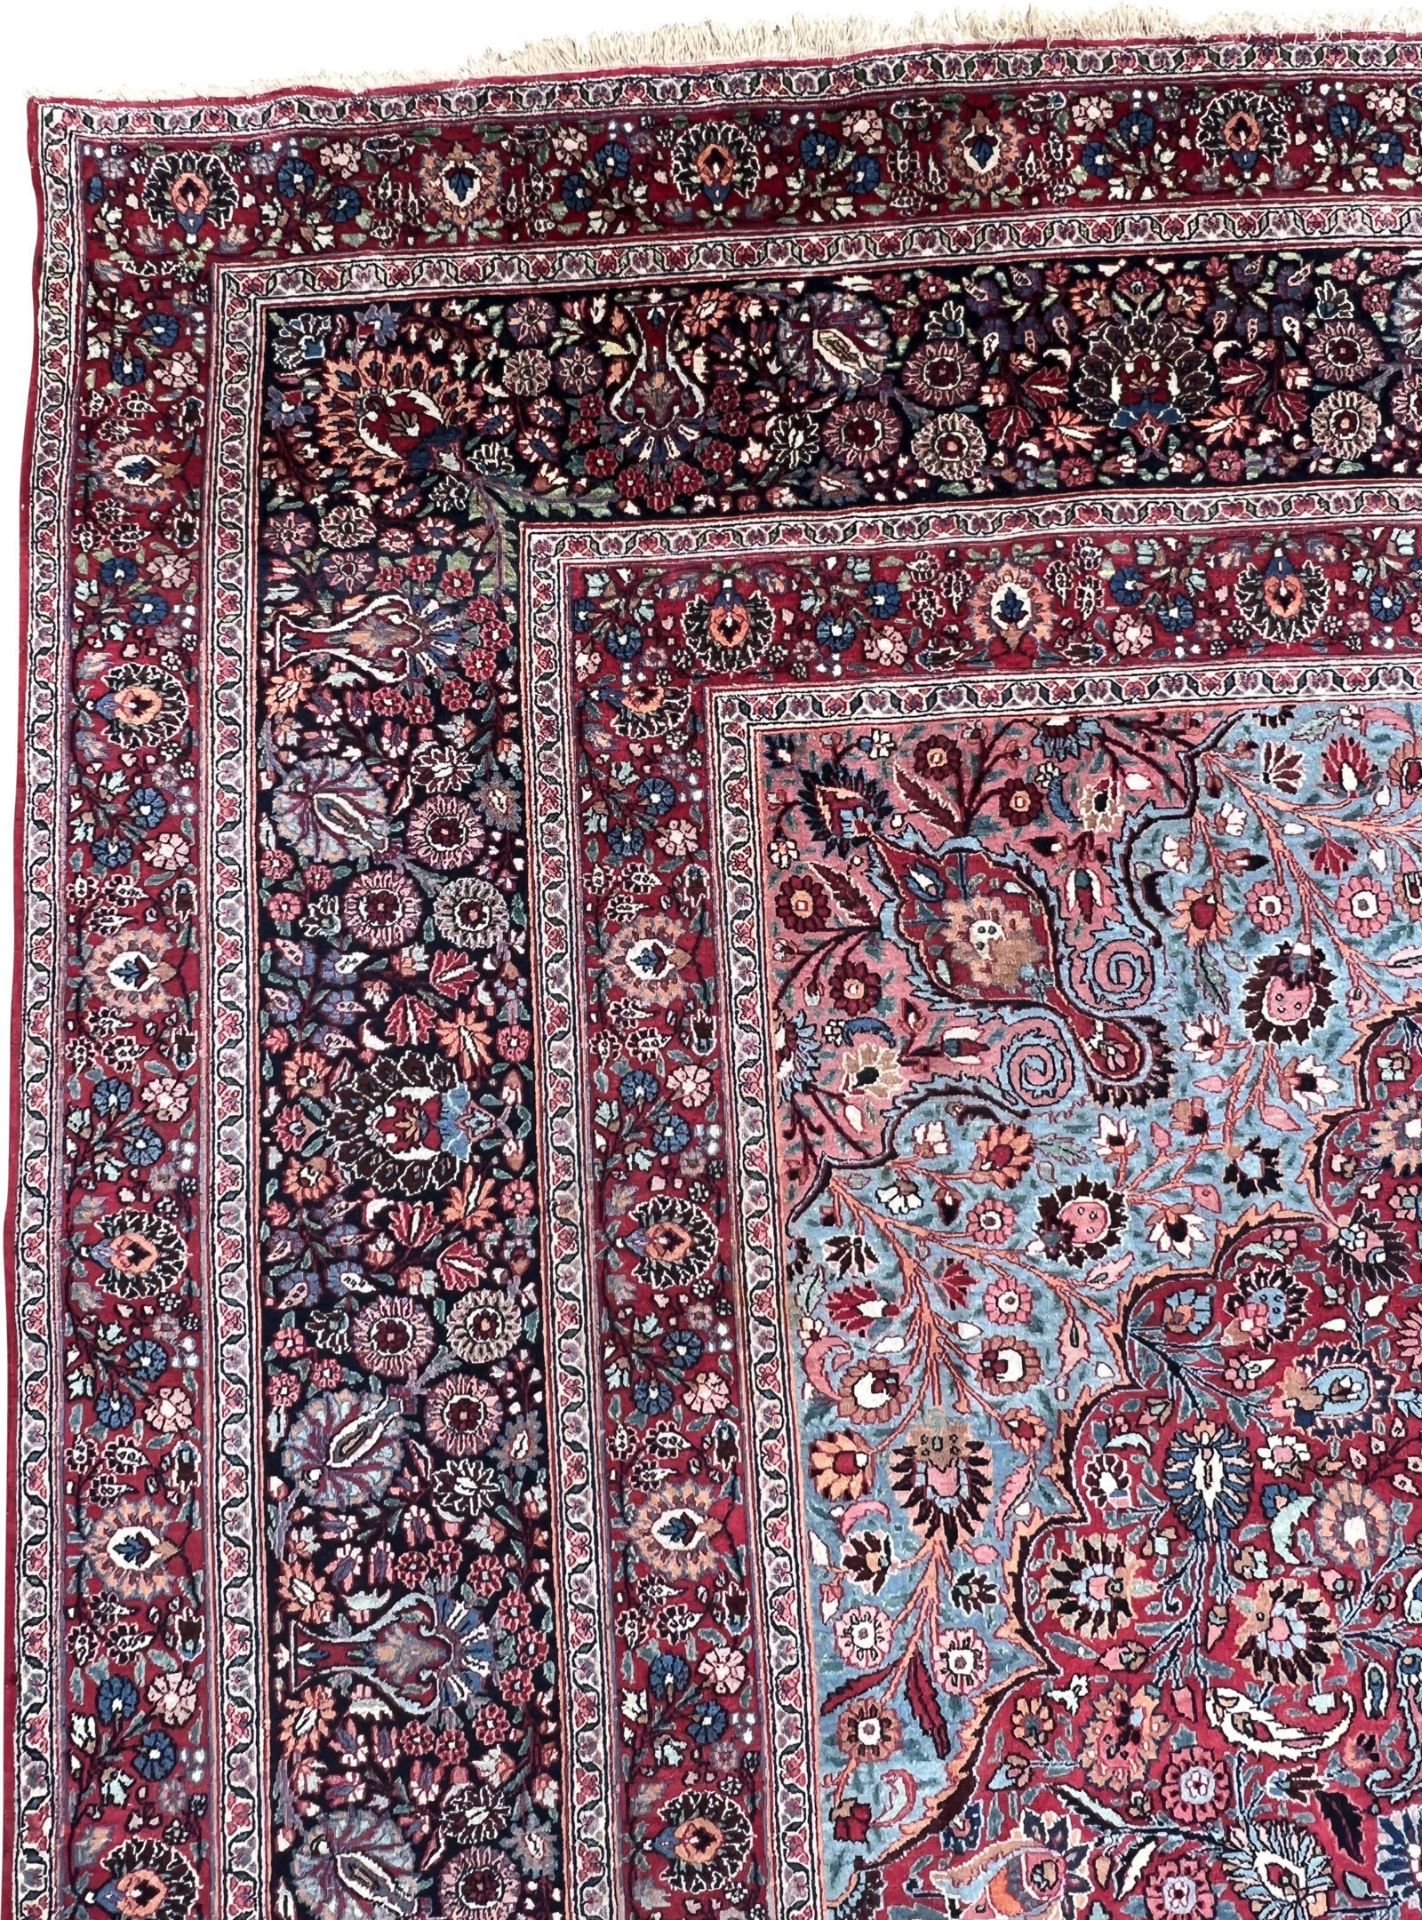 Mesched Salonteppich. Persien. Um 1900. Antik. Signiert ''Hamid Hadawi''. - Bild 3 aus 17